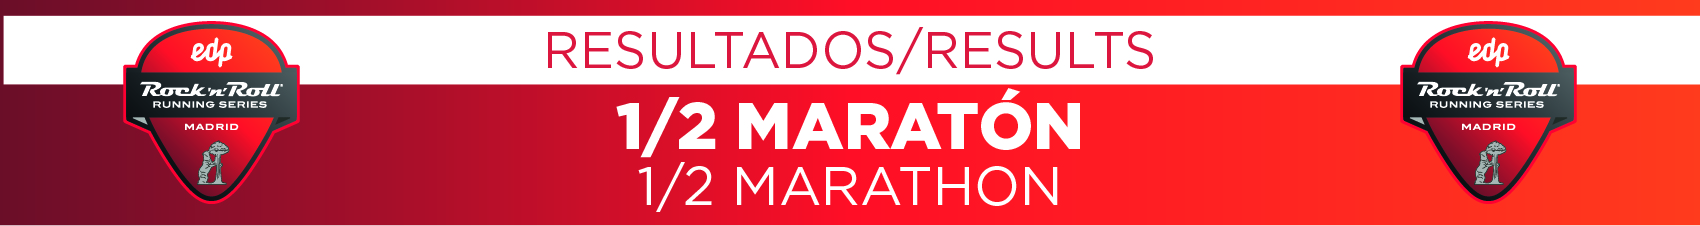 EDP Rock 'n' Roll Running Series Madrid 2021 - Media Maratón